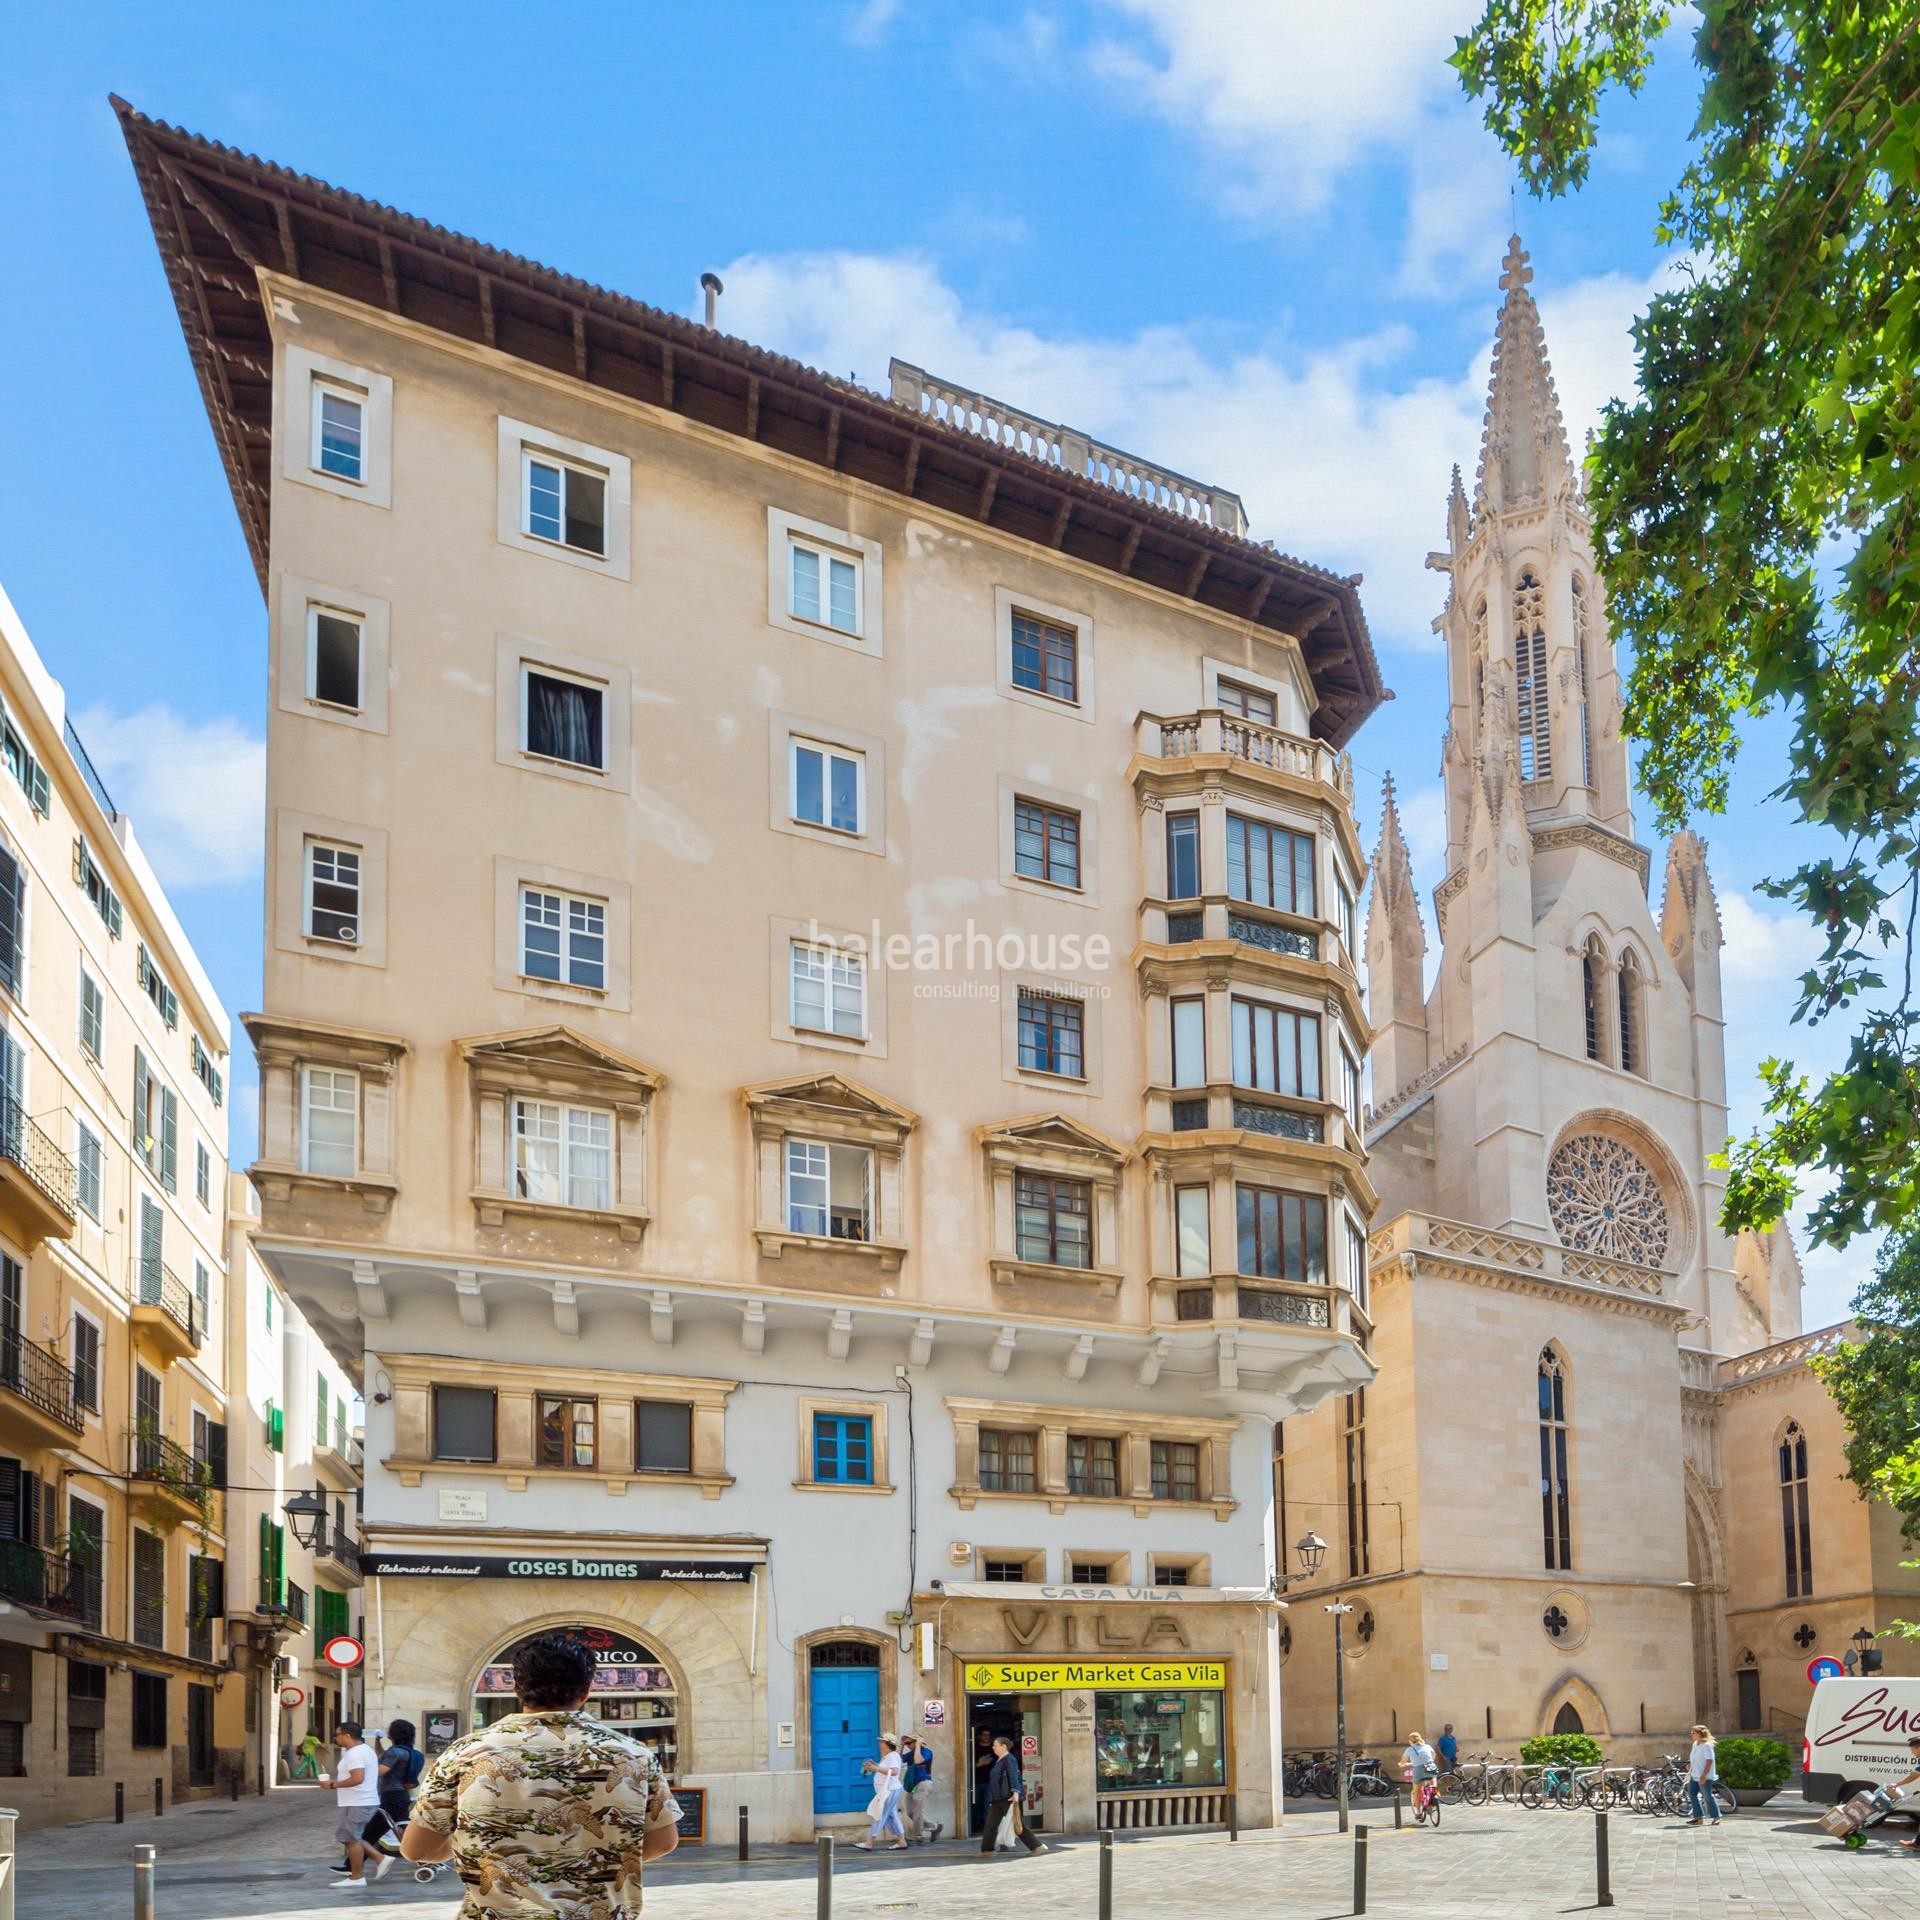 Excelente edificio en venta en el centro histórico de Palma con vistas fabulosas a toda la ciudad